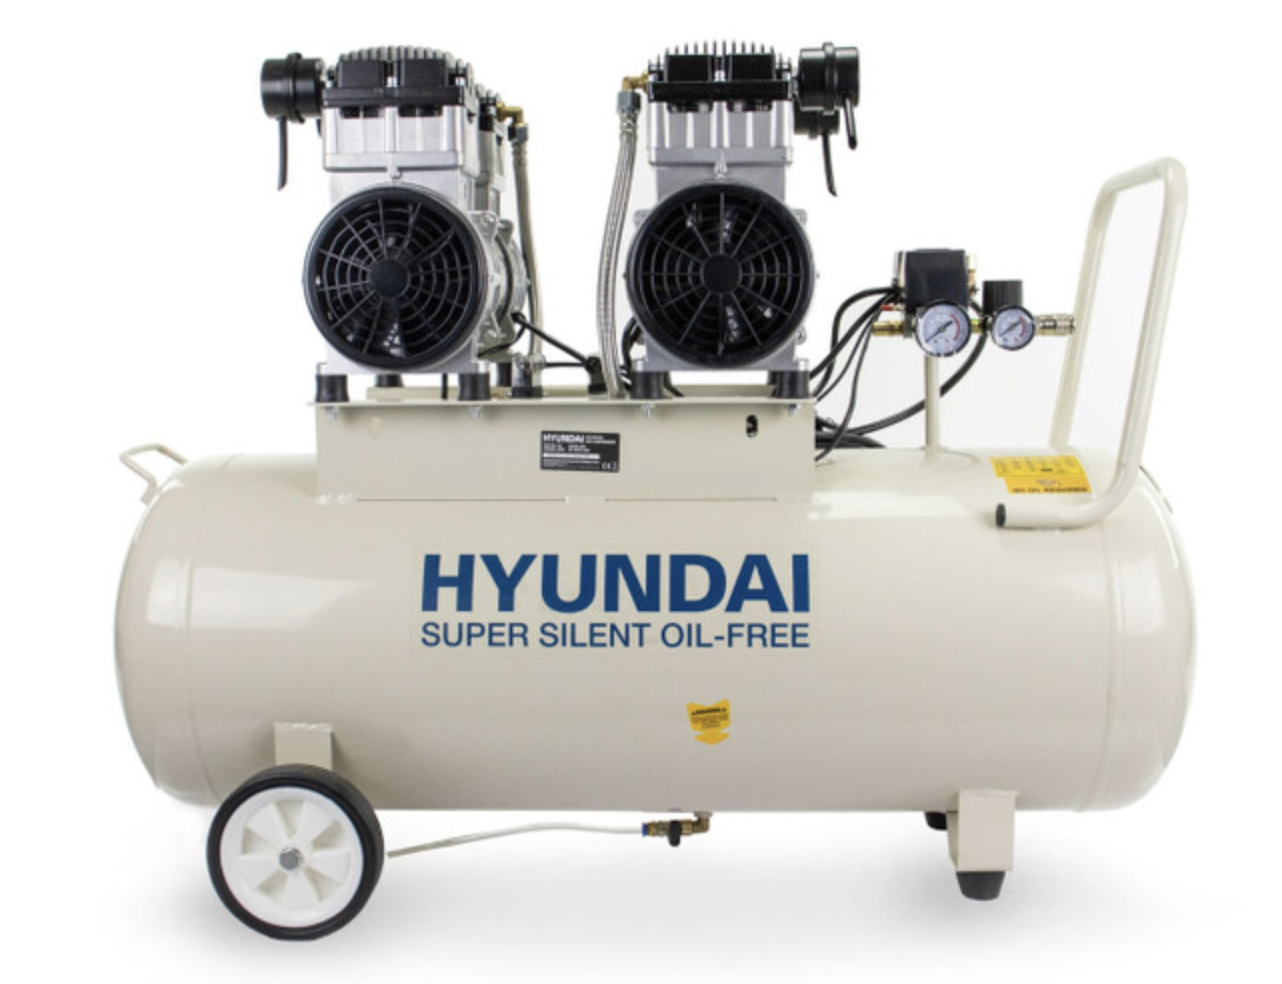 Hyundai 100 Litre Silenced Air Compressor 3000W Electric Oil-free 4hp 